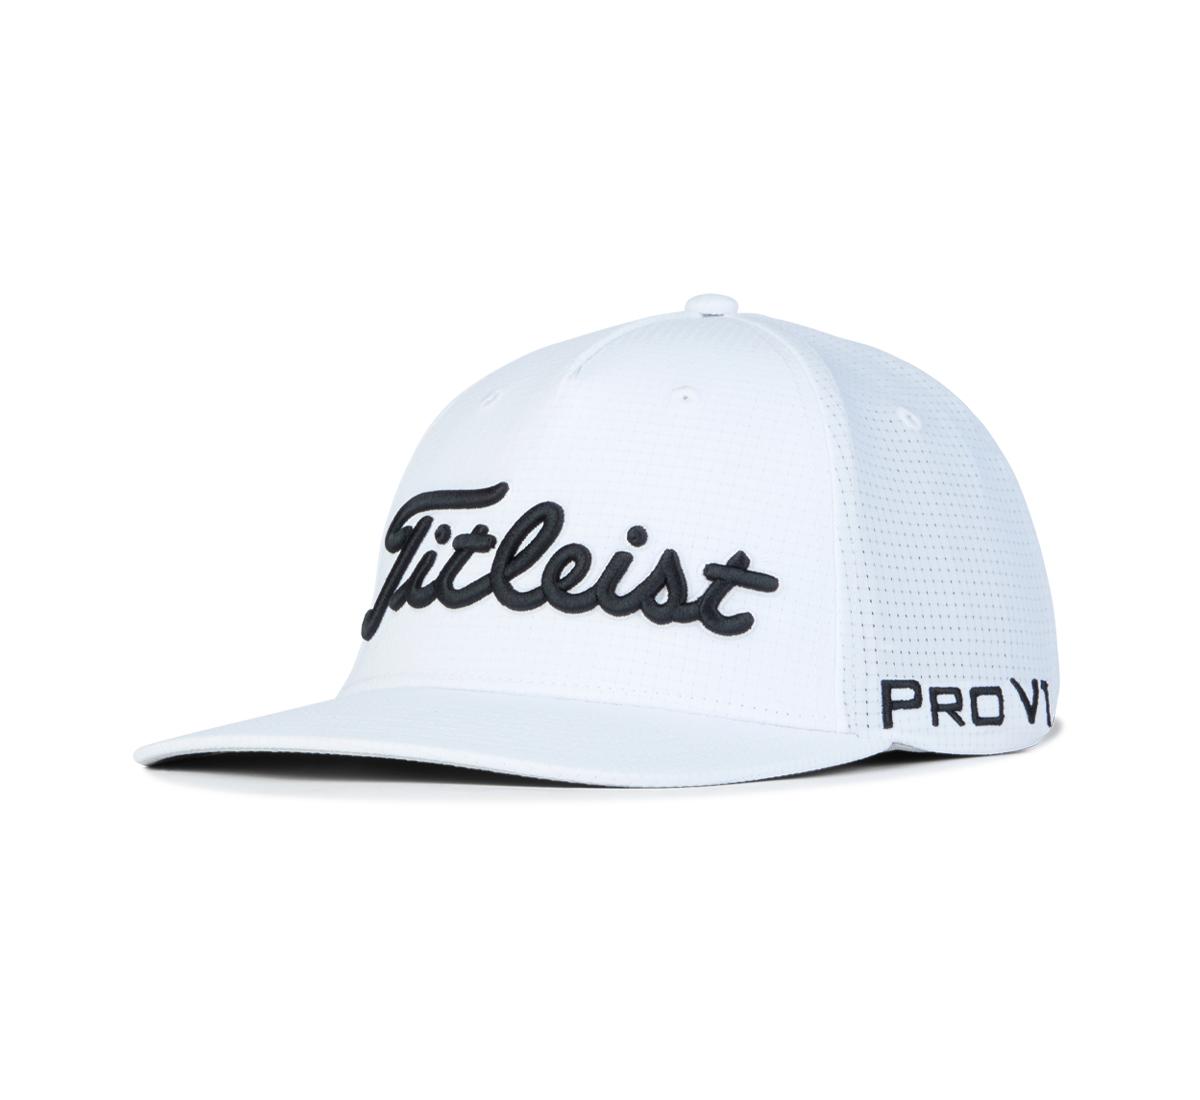 titleist golf hats